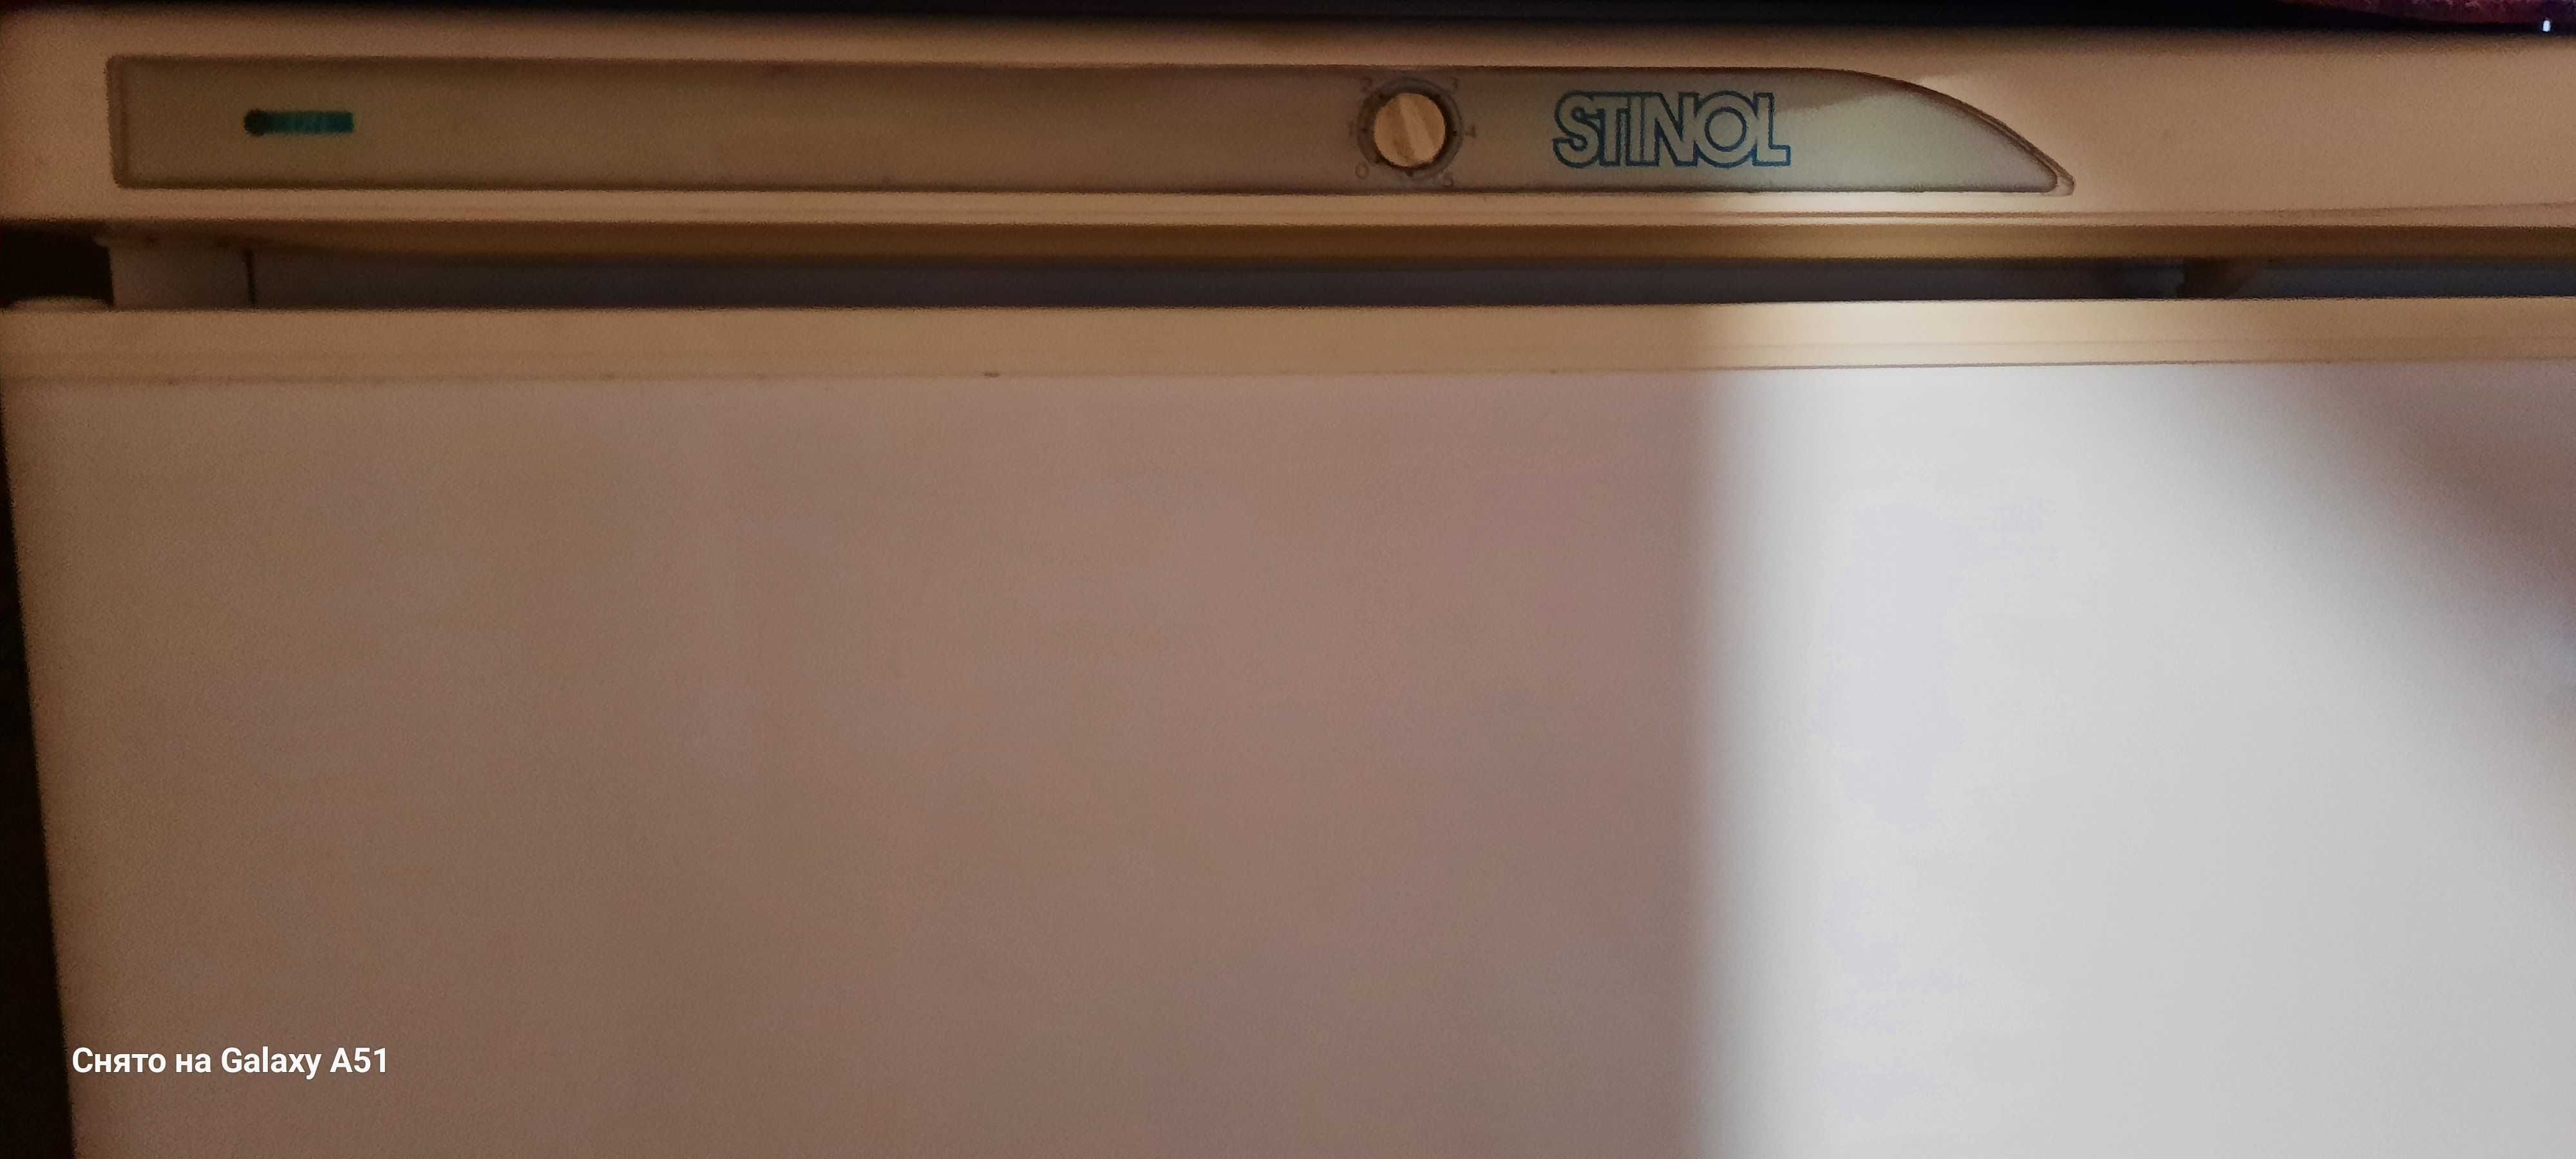 Двух камерный холодильник STINOL